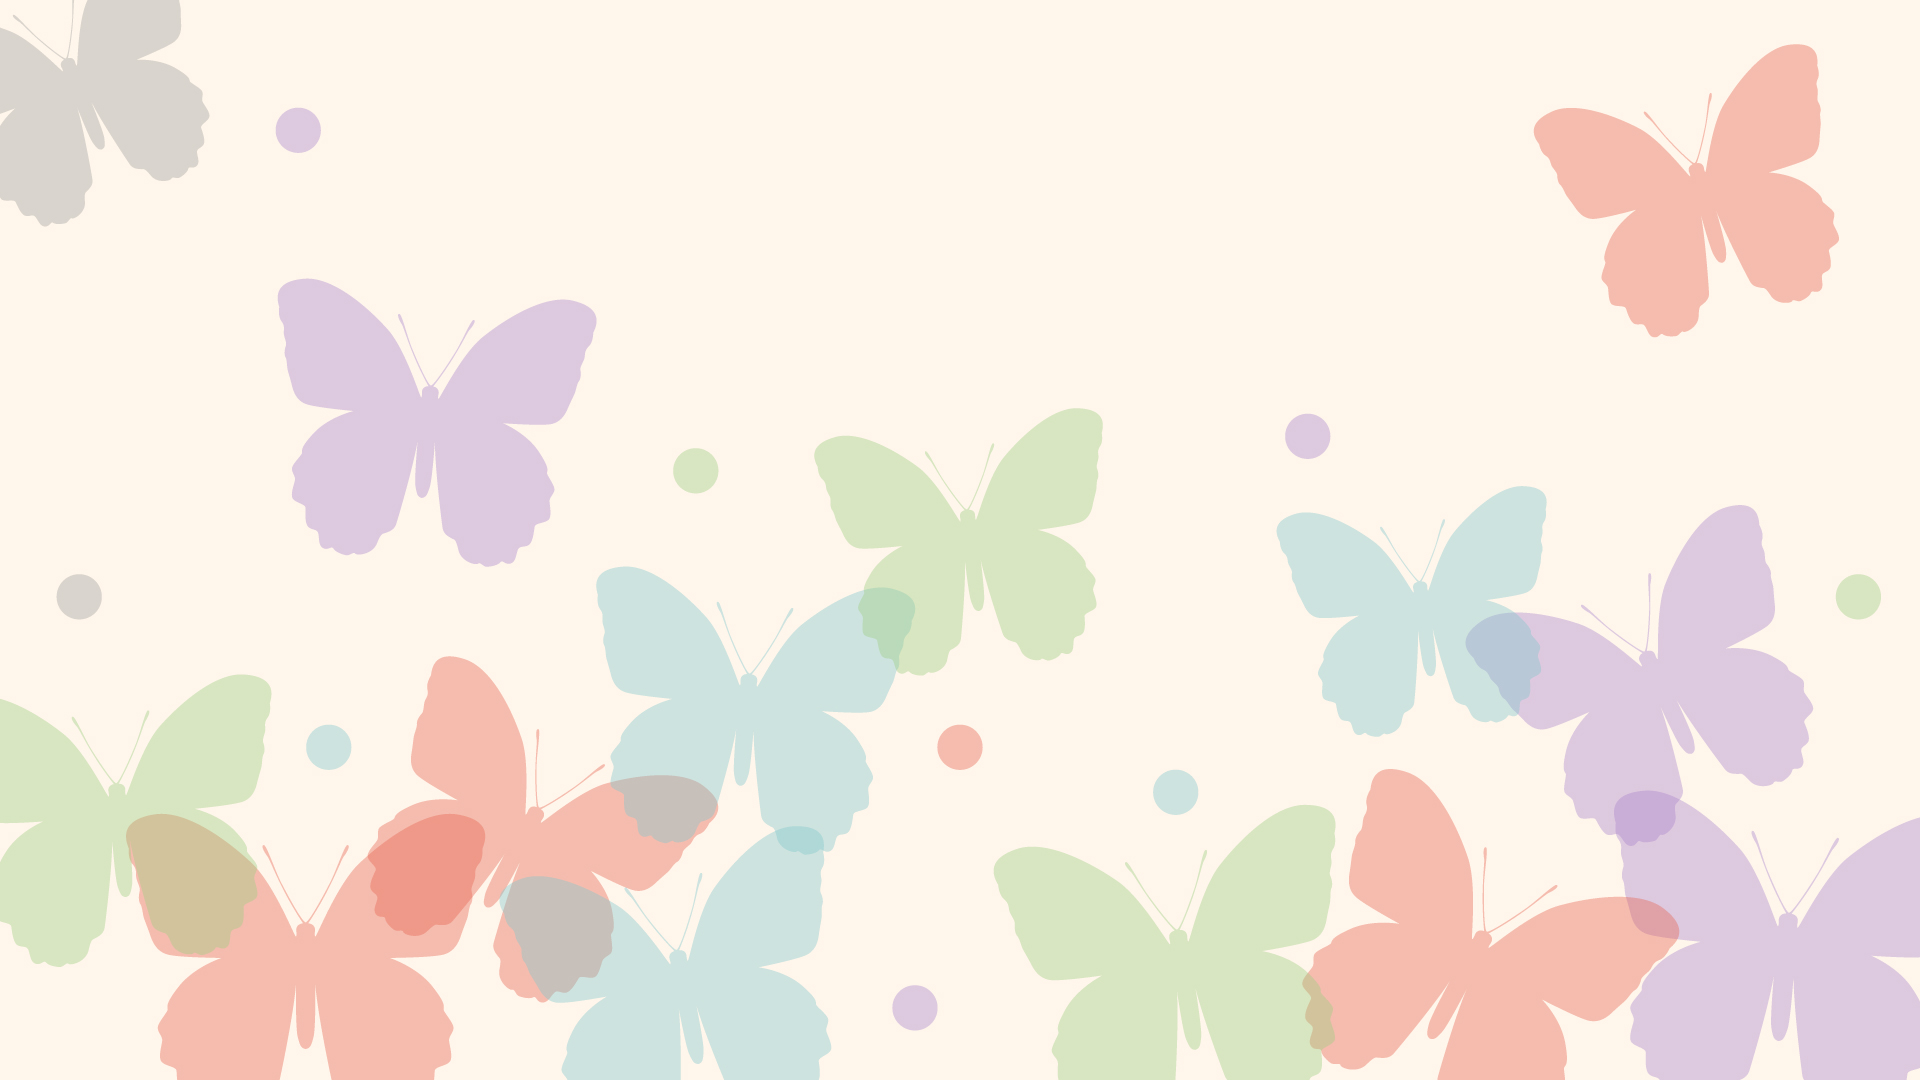 パステル調の蝶々の壁紙・背景素材 1,920px×1,080px